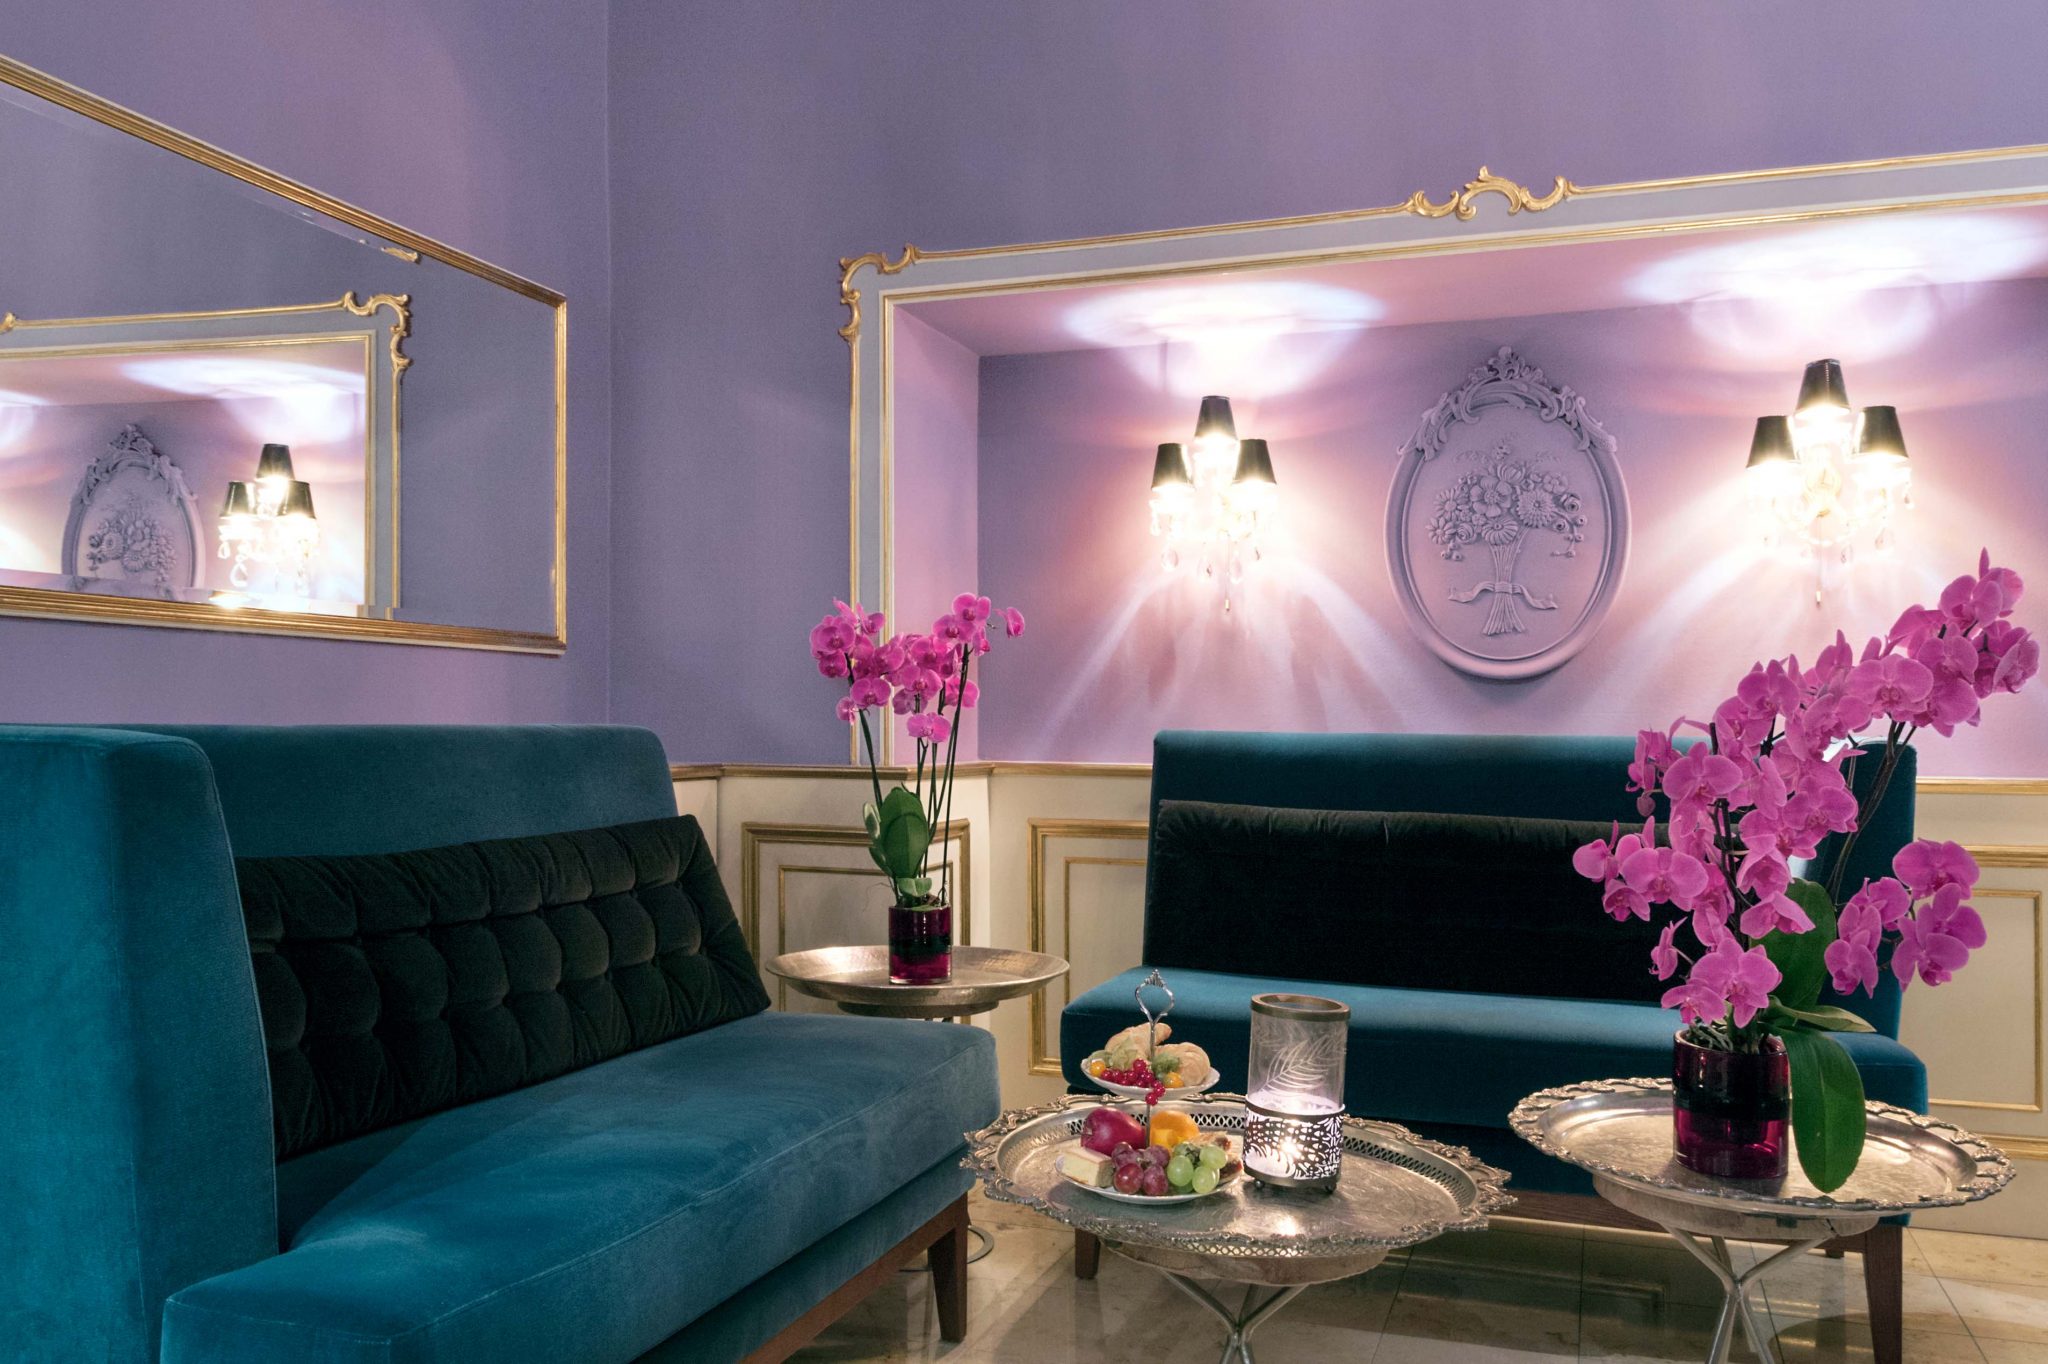 Große, petrolfarbene Samtsofas in flieder-farbenem Raum mit silbernen Tischen und Orchideen